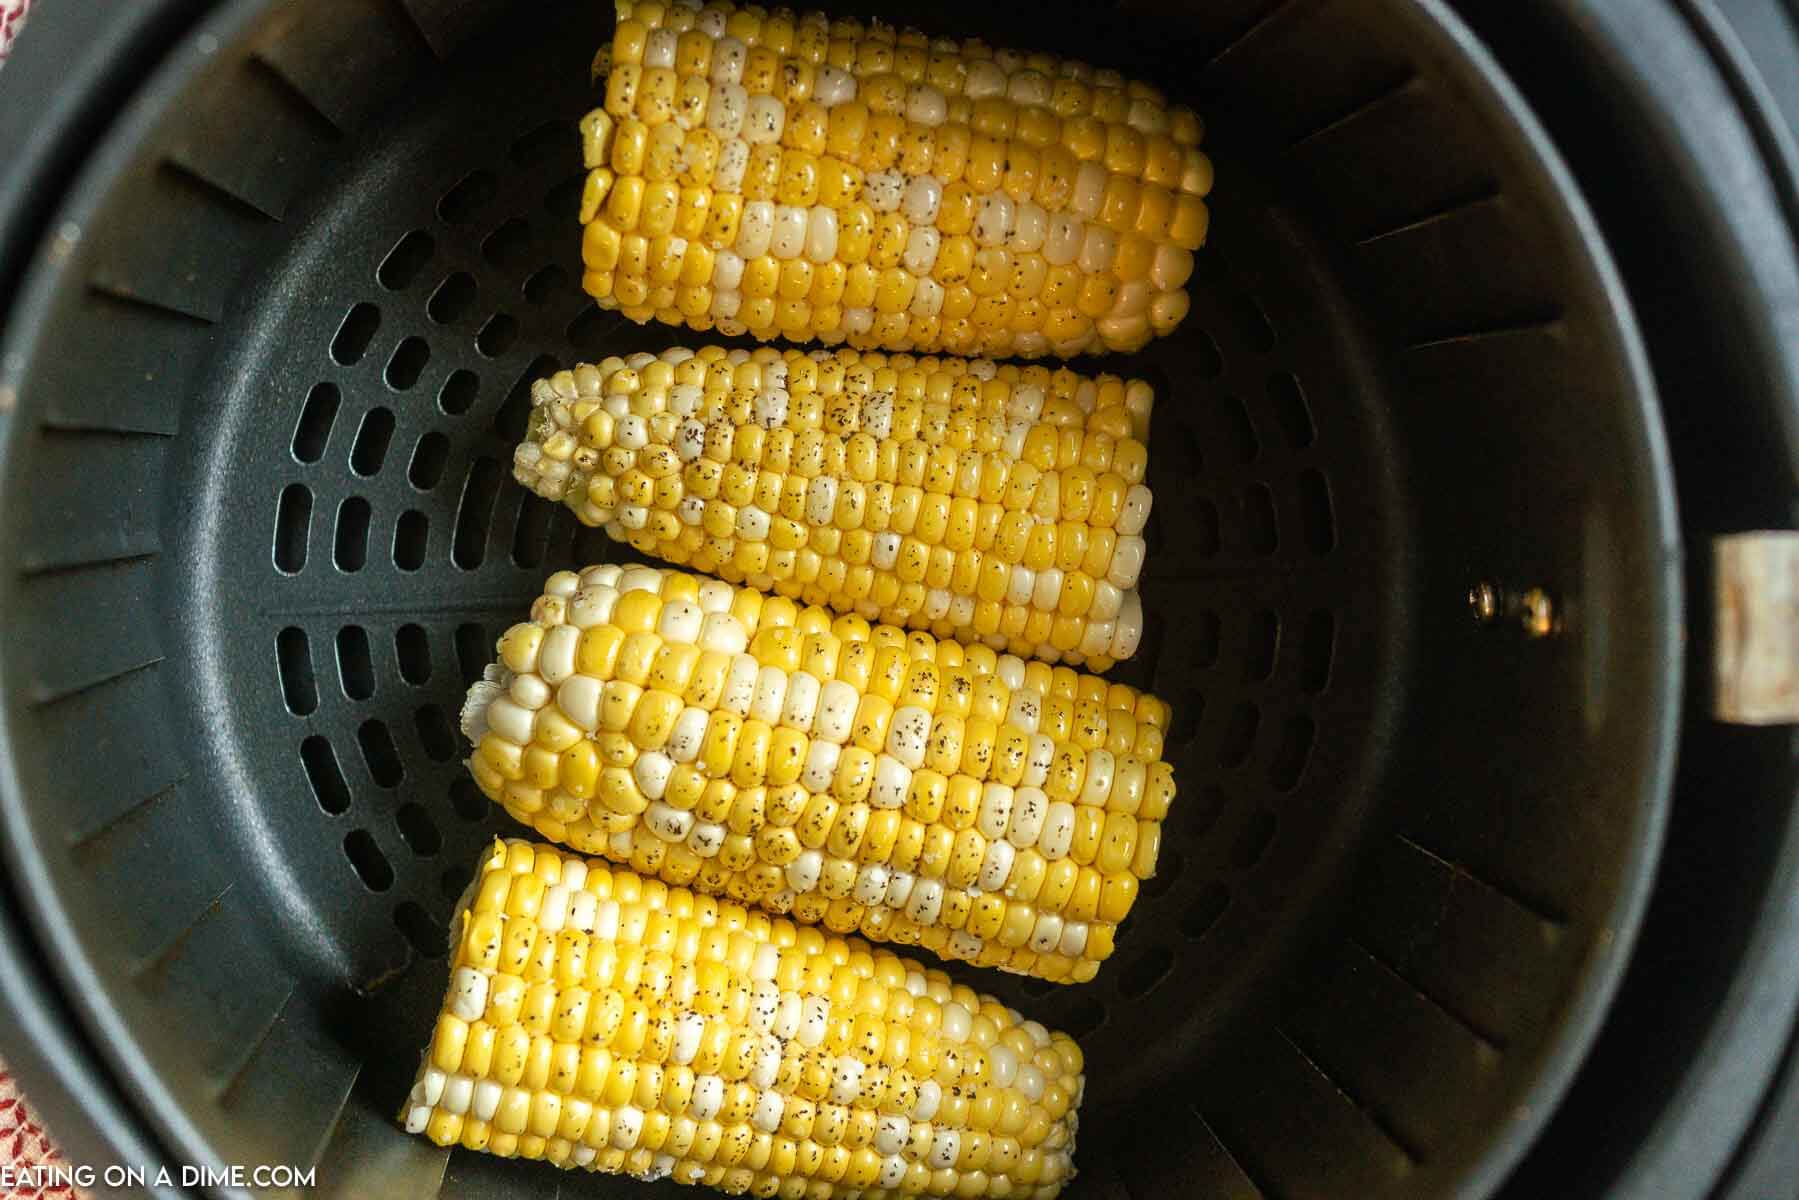 Freshly seasoned corn on the cob in the air fryer